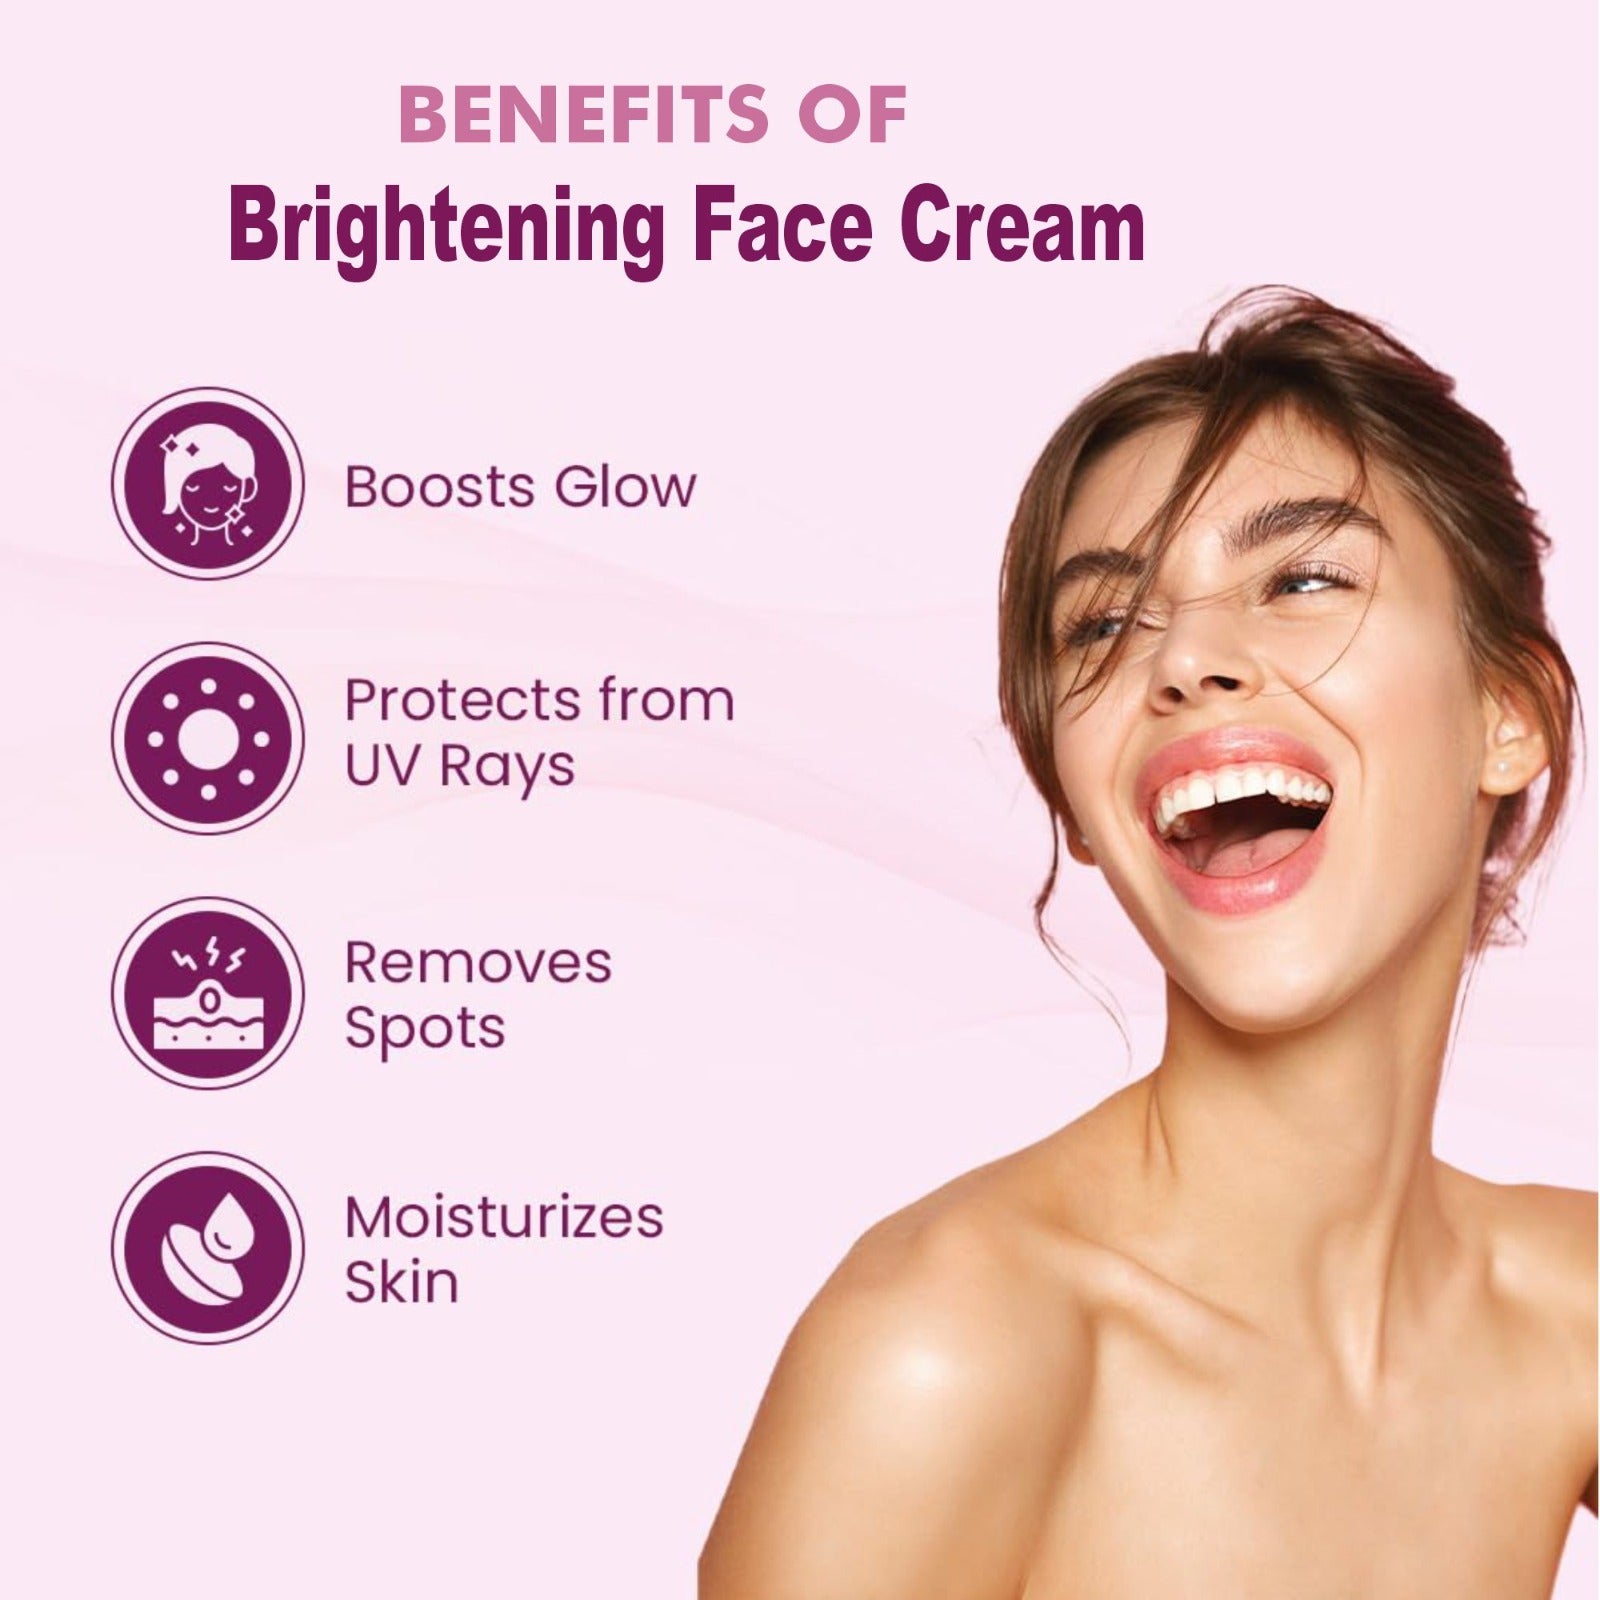 Brightening face cream